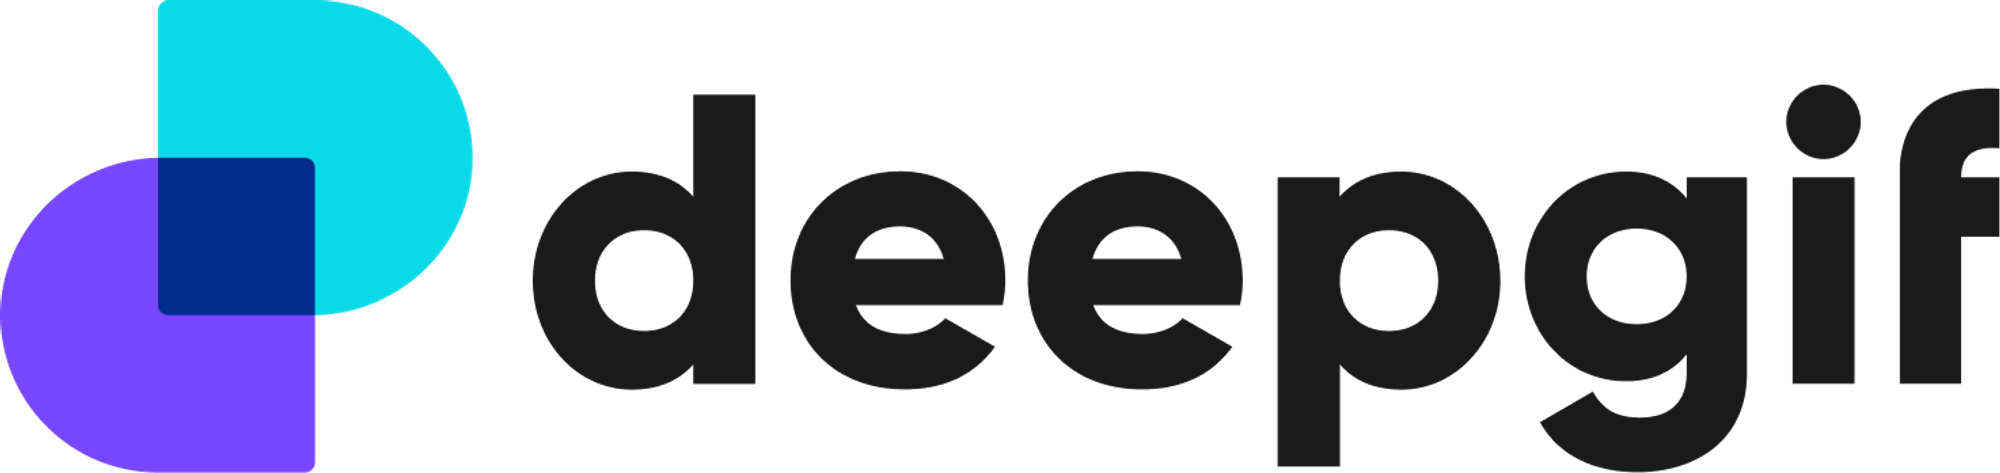 Modern logo design for deepgif.com